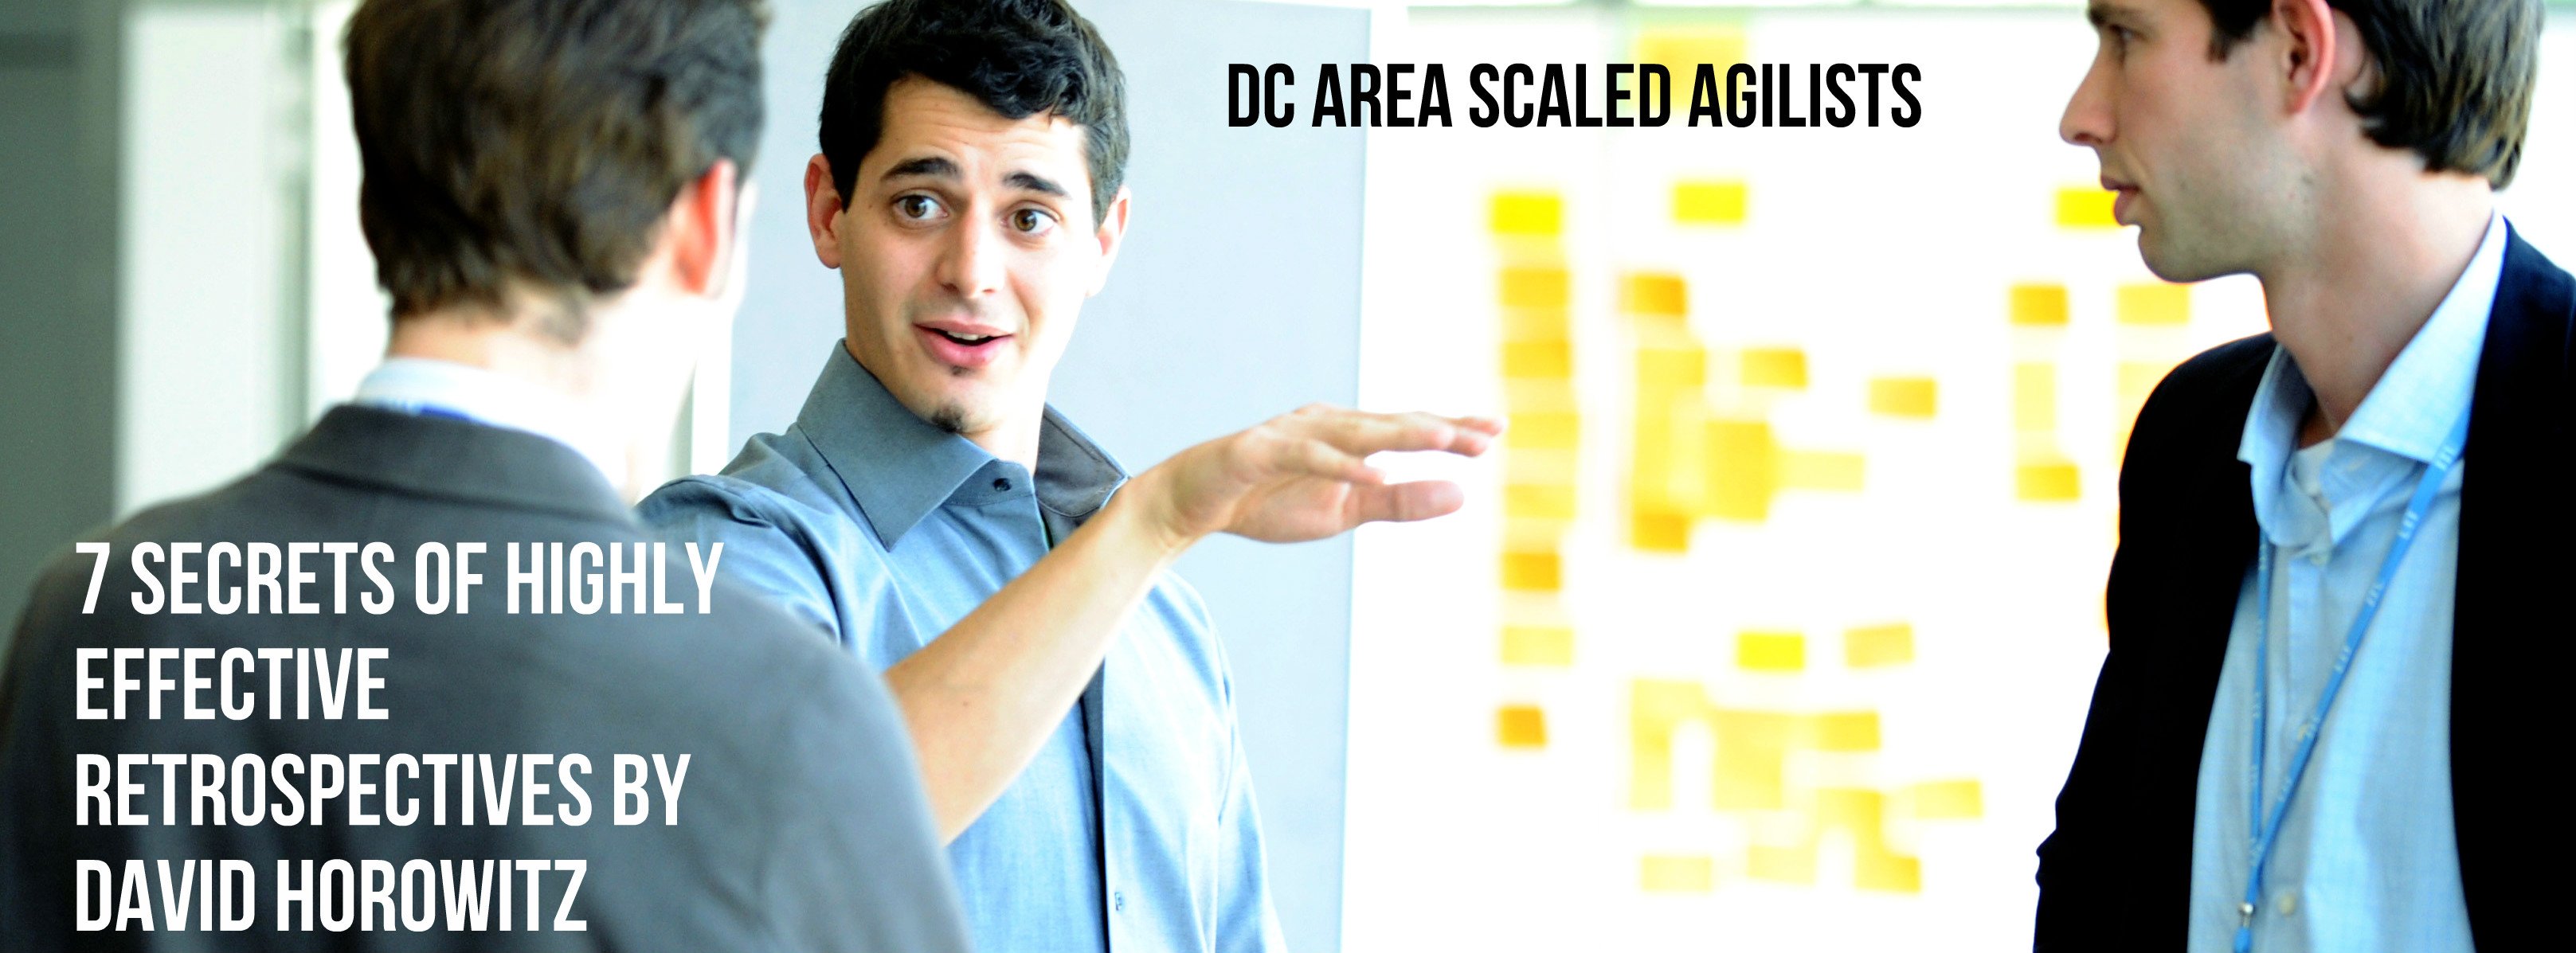 DC_Area_Scaled_Agilists.jpg